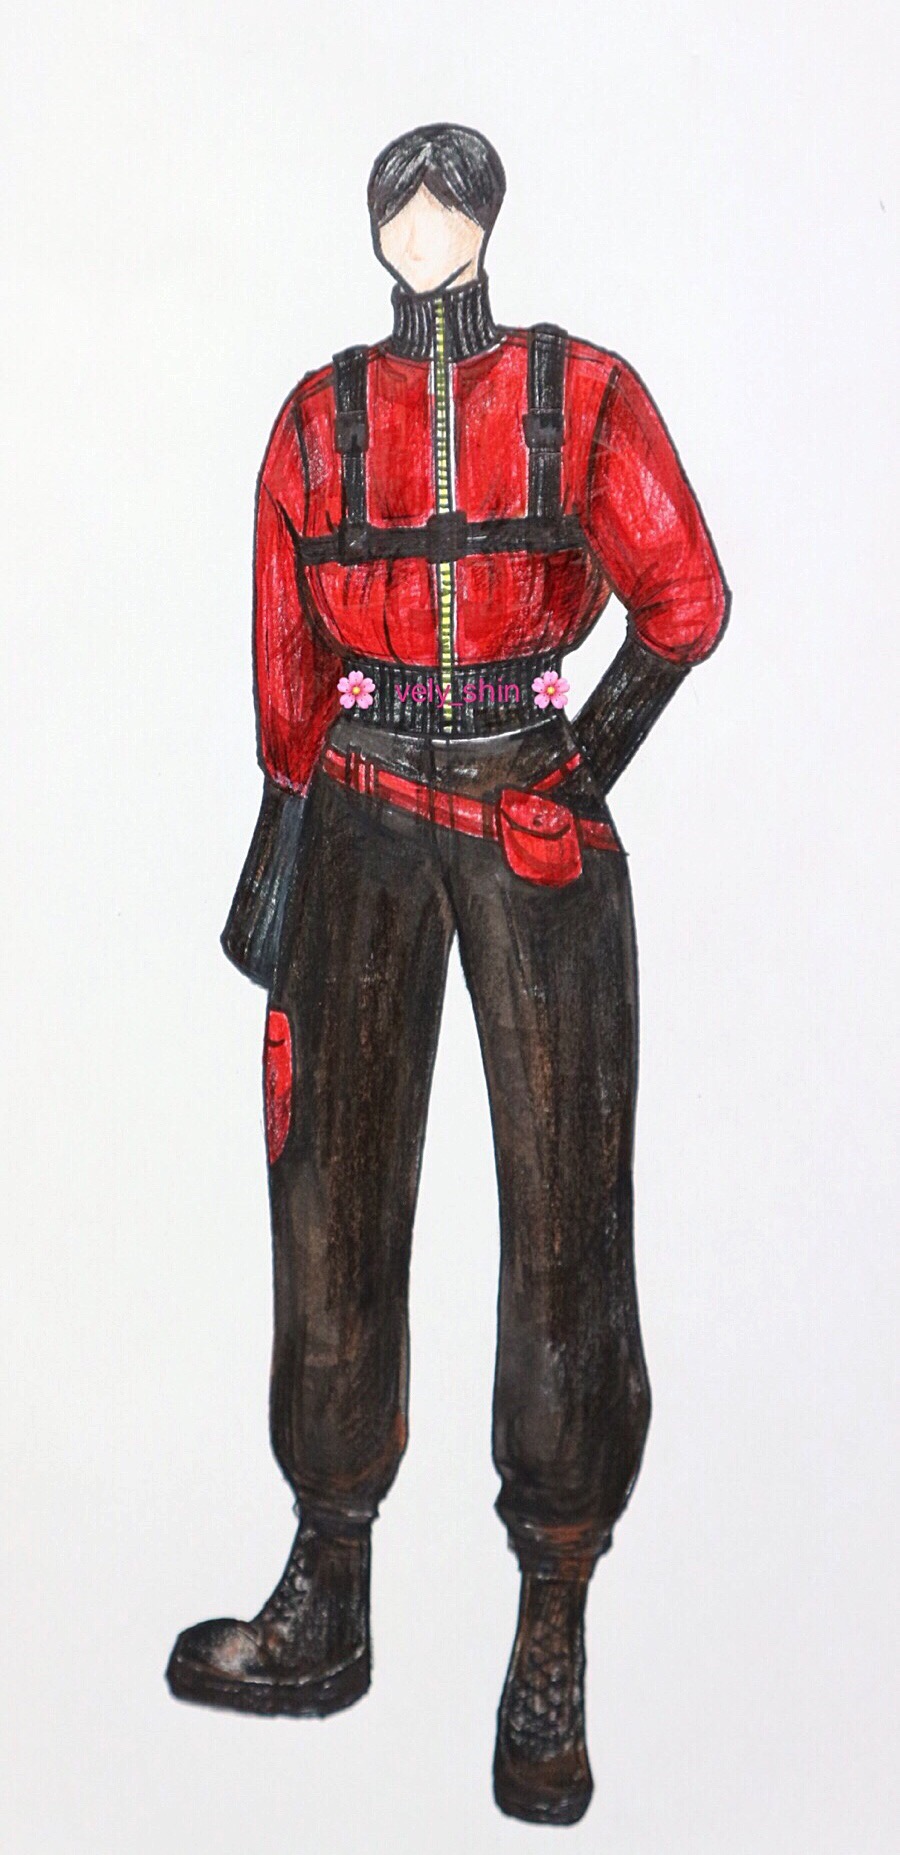 하드한 가죽소재로 만든 항공점퍼 (Costume design2) - 블로그